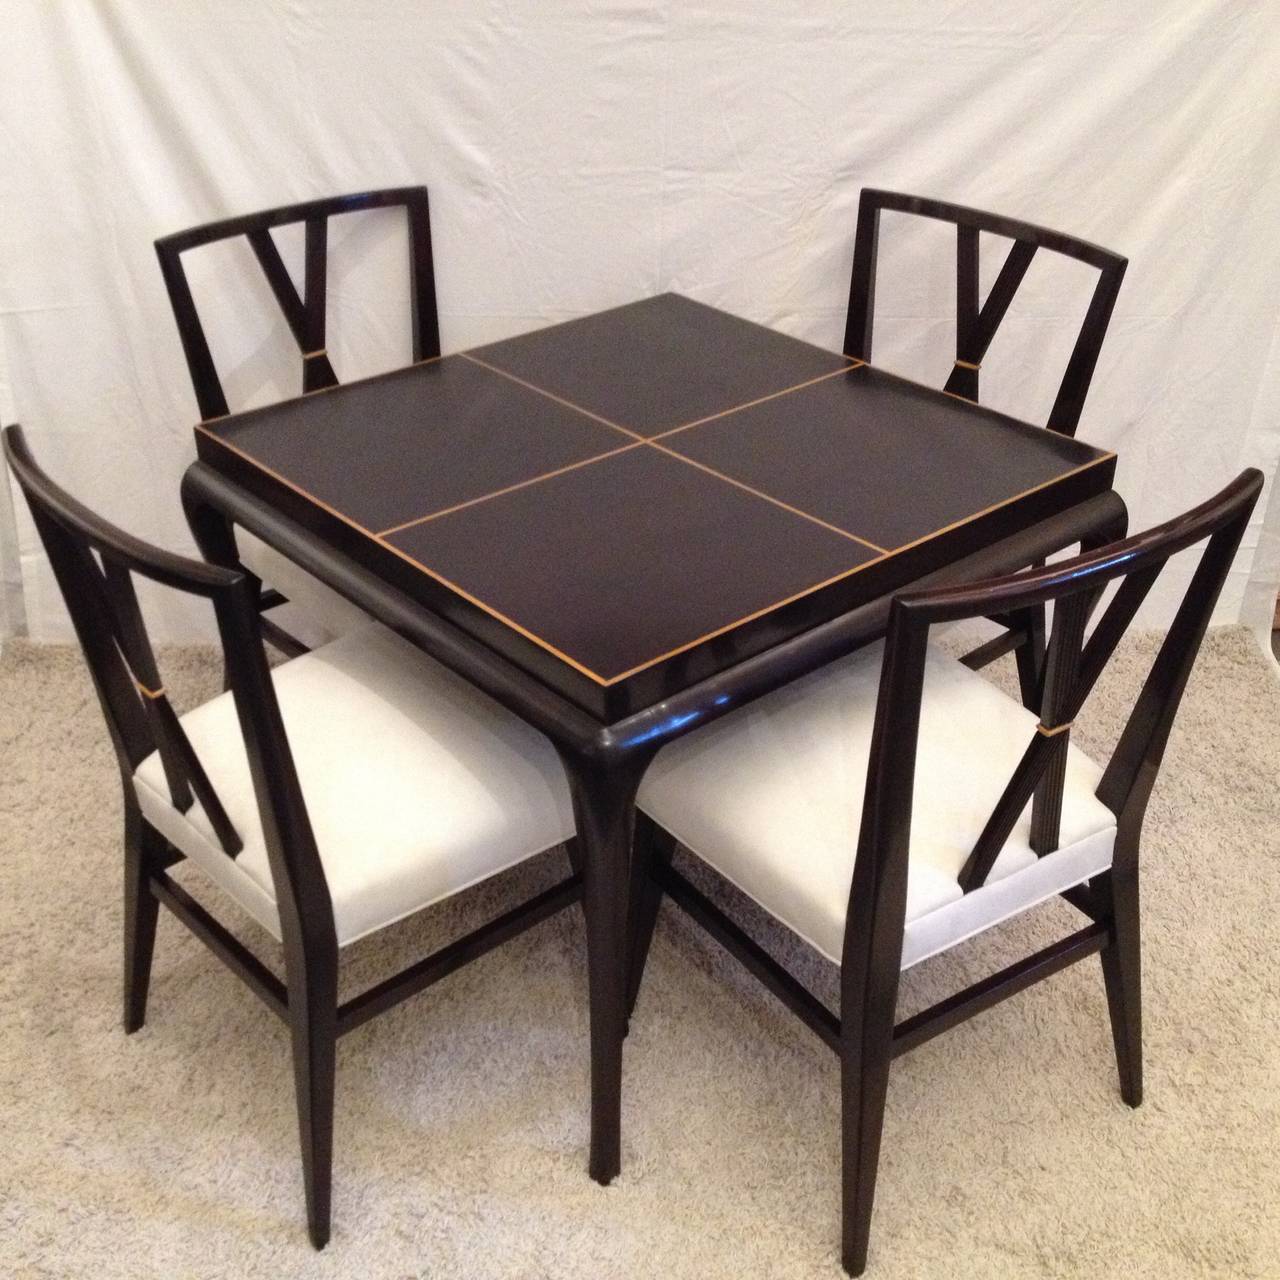 Tommi Parzinger Kartentisch oder kleiner Esstisch und vier Stühle mit doppelter X-Rückenlehne, seltene dunkle Mahagoni Hollywood Intarsienplatte.
Tischgröße: 36 x 36 29